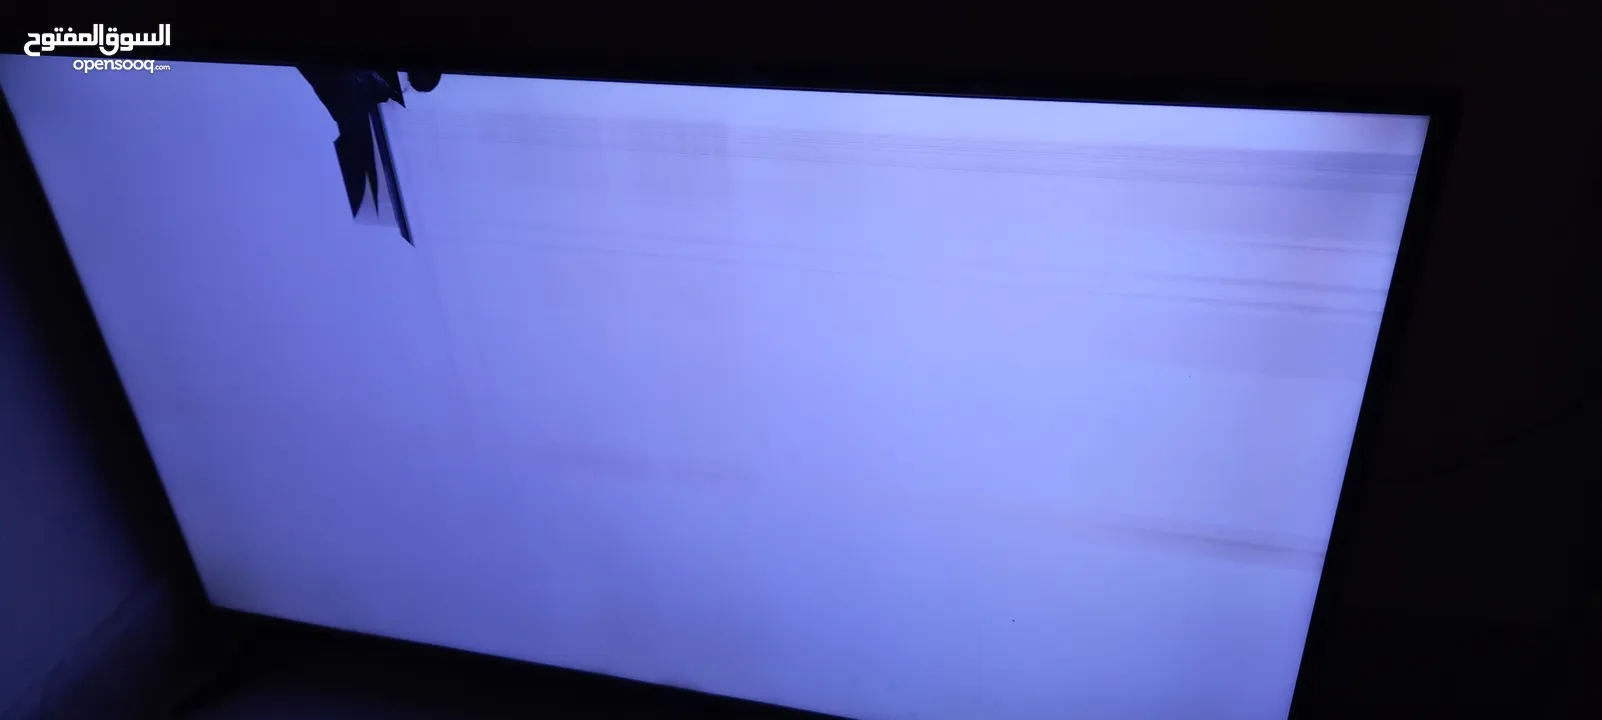 تلفزيون اوركا 50 بوصة الشاشة مكسورة لا تعمل